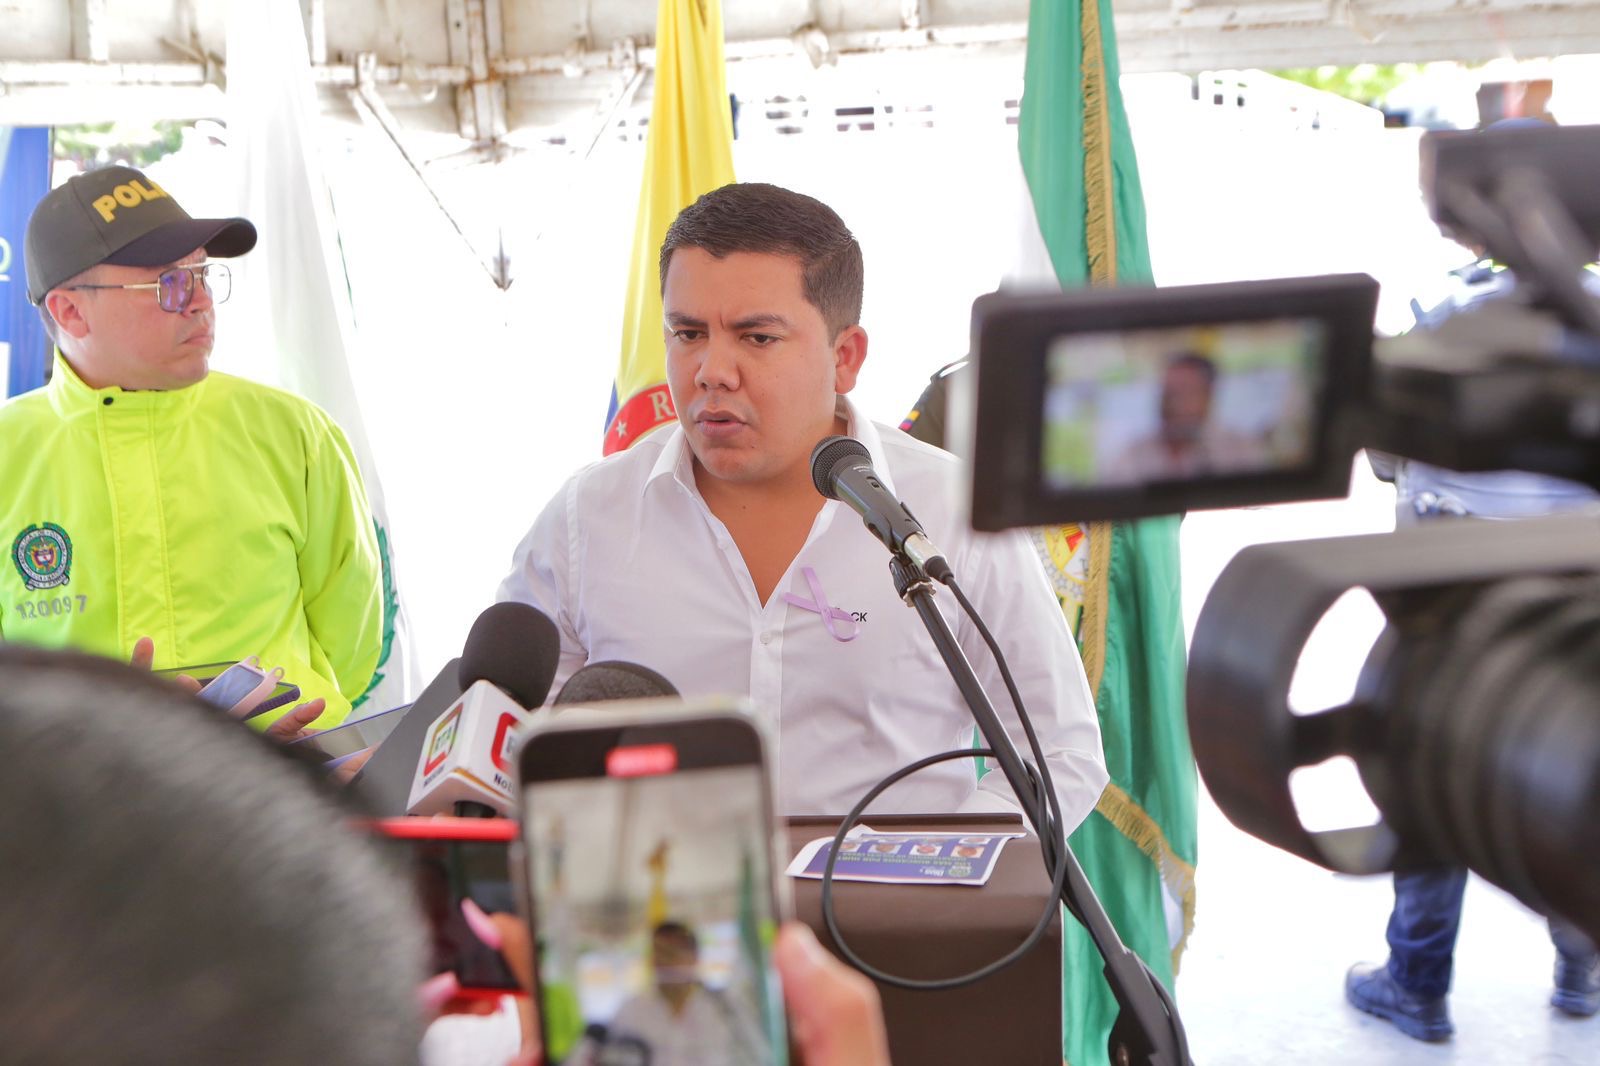 “Estamos combatiendo con mano firme el crimen organizado”: Secretario de Gobierno de Valledupar